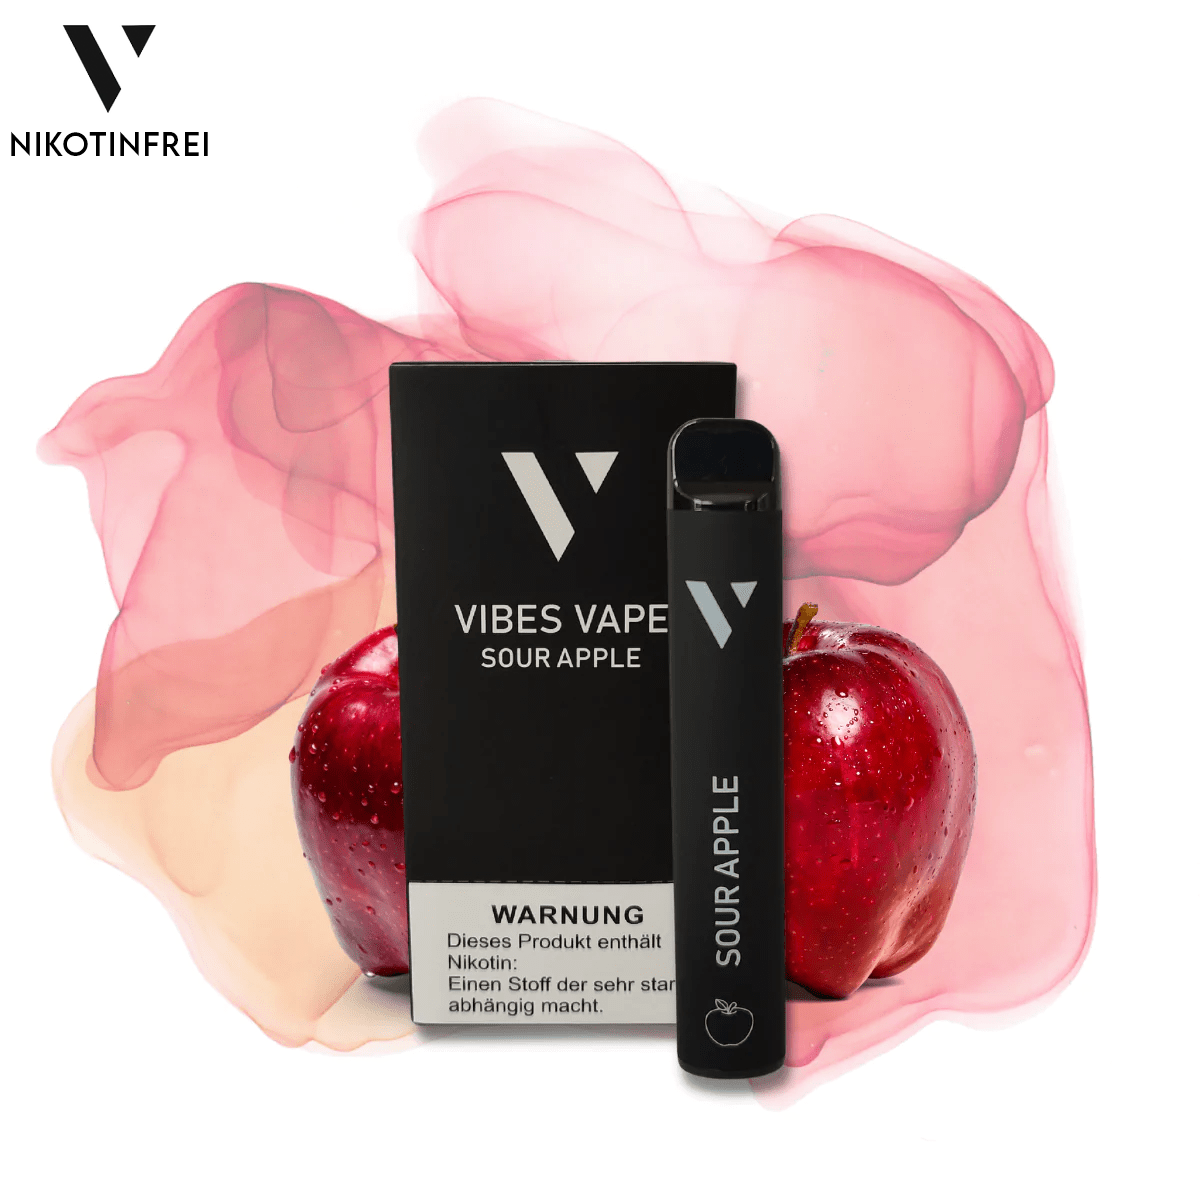 Nikotinfrei -10x Vibes Vape - Sour Apple - vibesvape.de